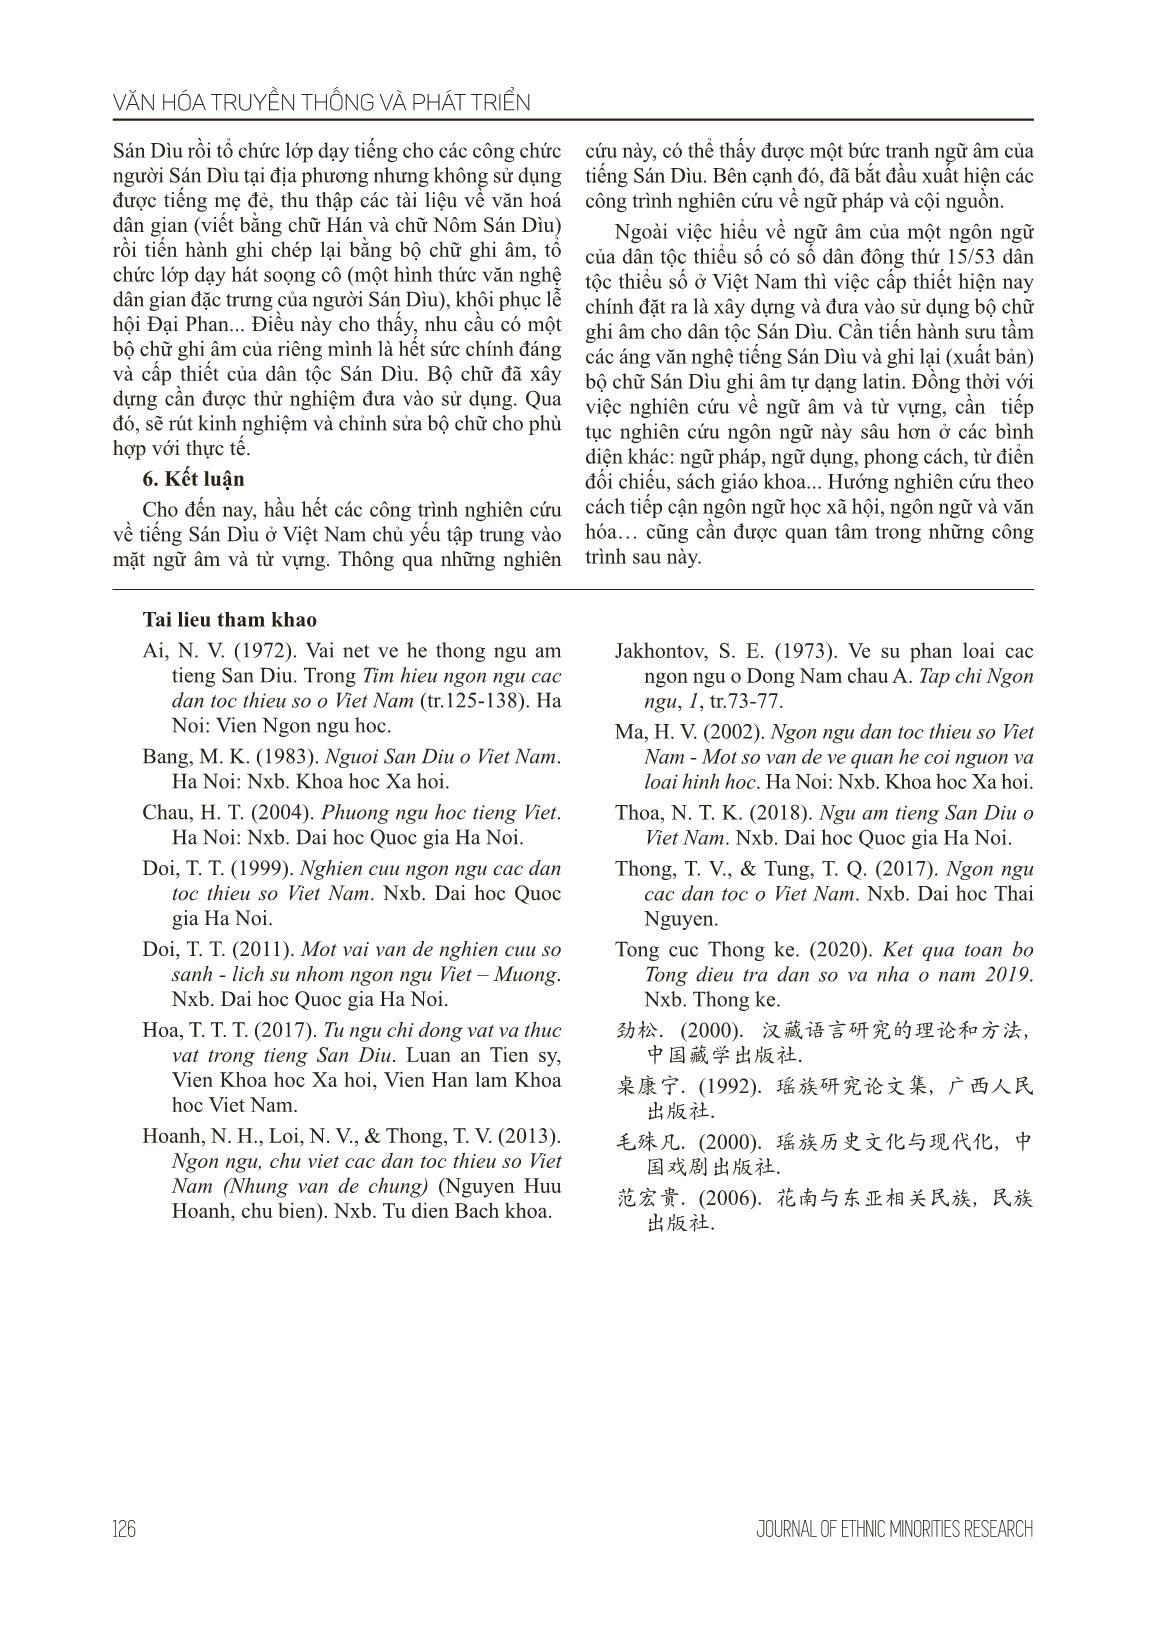 Những vấn đề đặt ra trong nghiên cứu tiếng Sán Dìu ở Việt Nam hiện nay trang 5